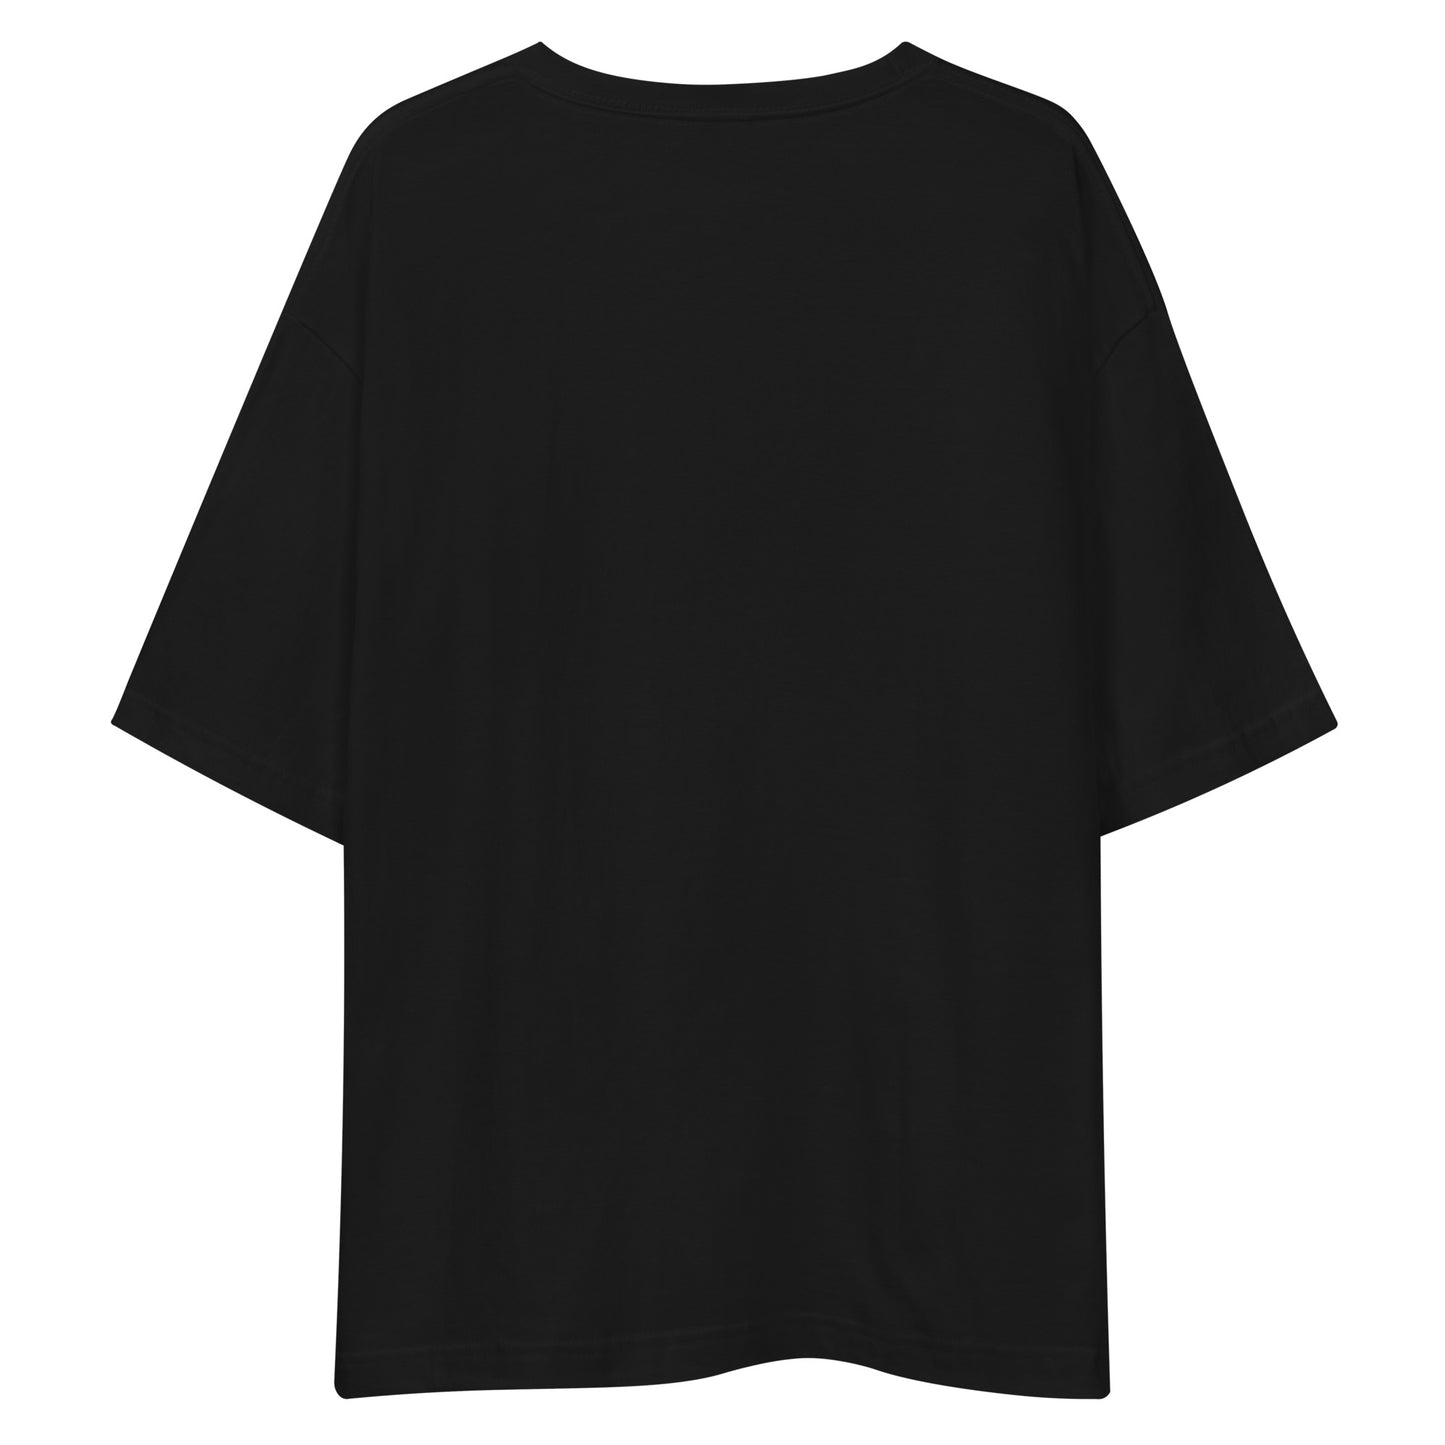 E215 - เสื้อยืด/ภาพเงาใหญ่ (กระโดดอวกาศ : สีดำ/เงิน)